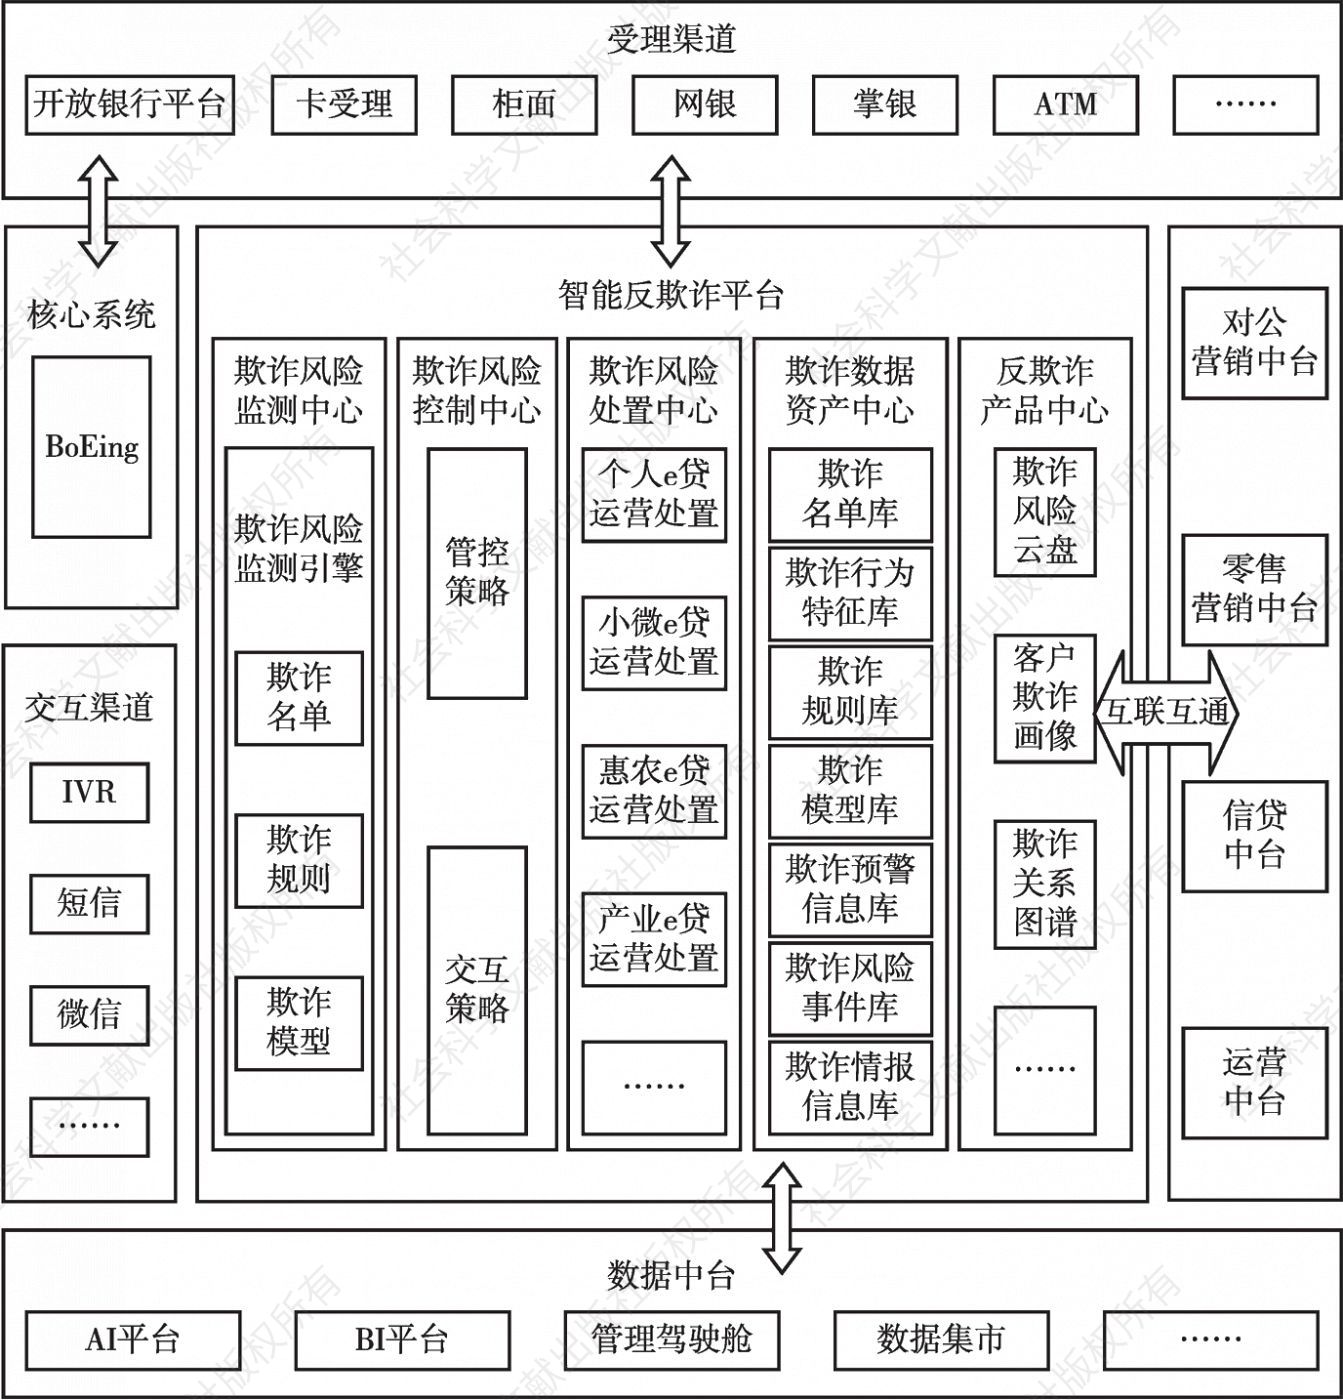 图6 中国农业银行智能反欺诈平台